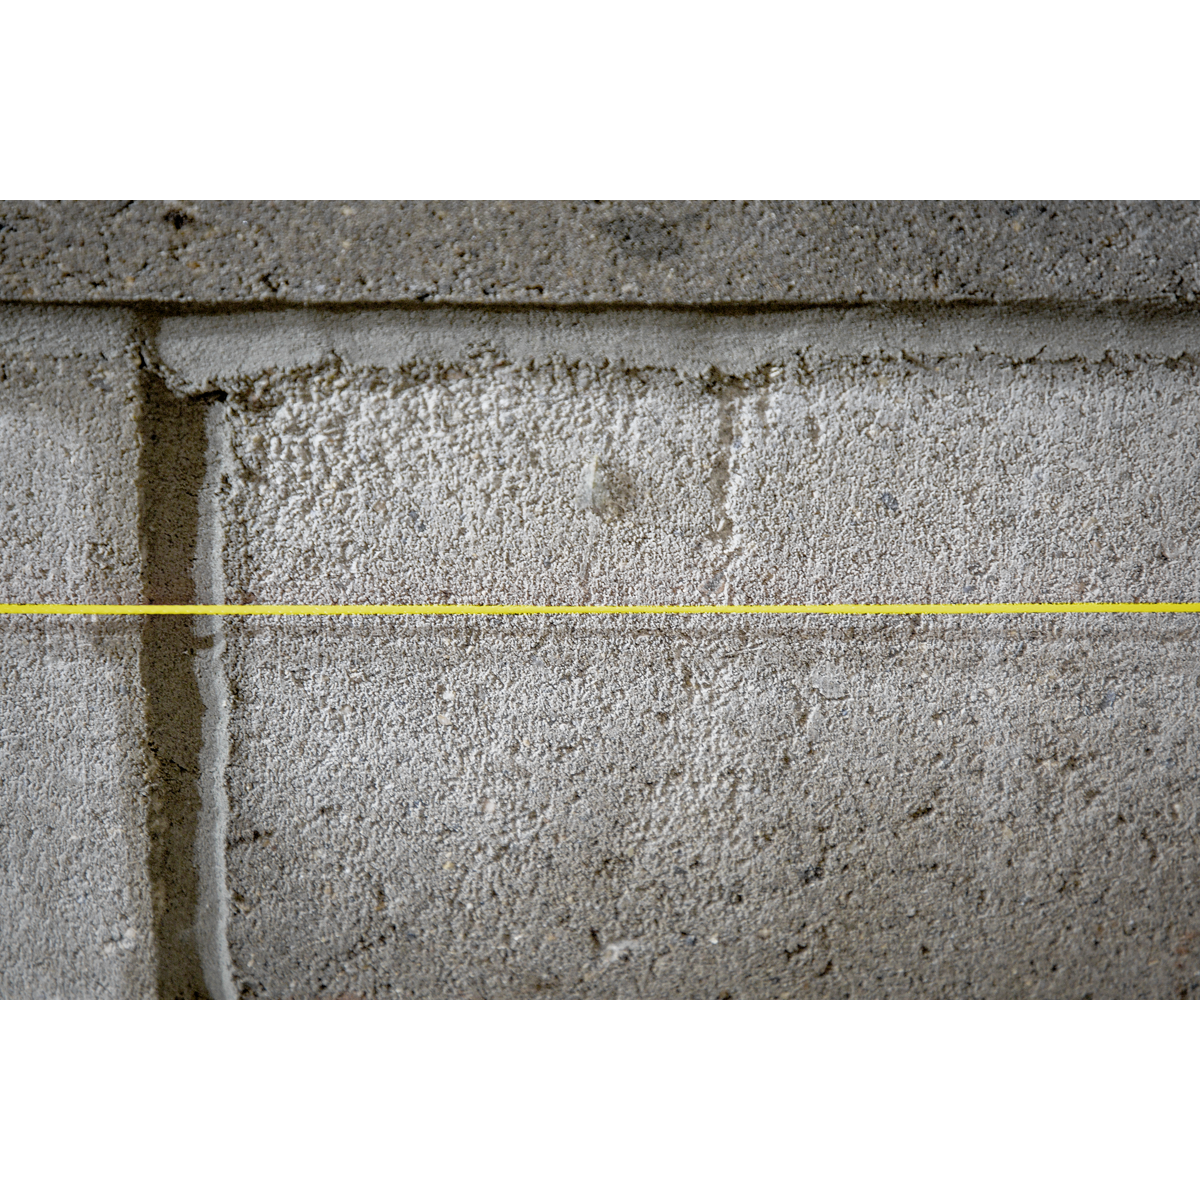 Braided Yellow Nylon Brick Line - 76m